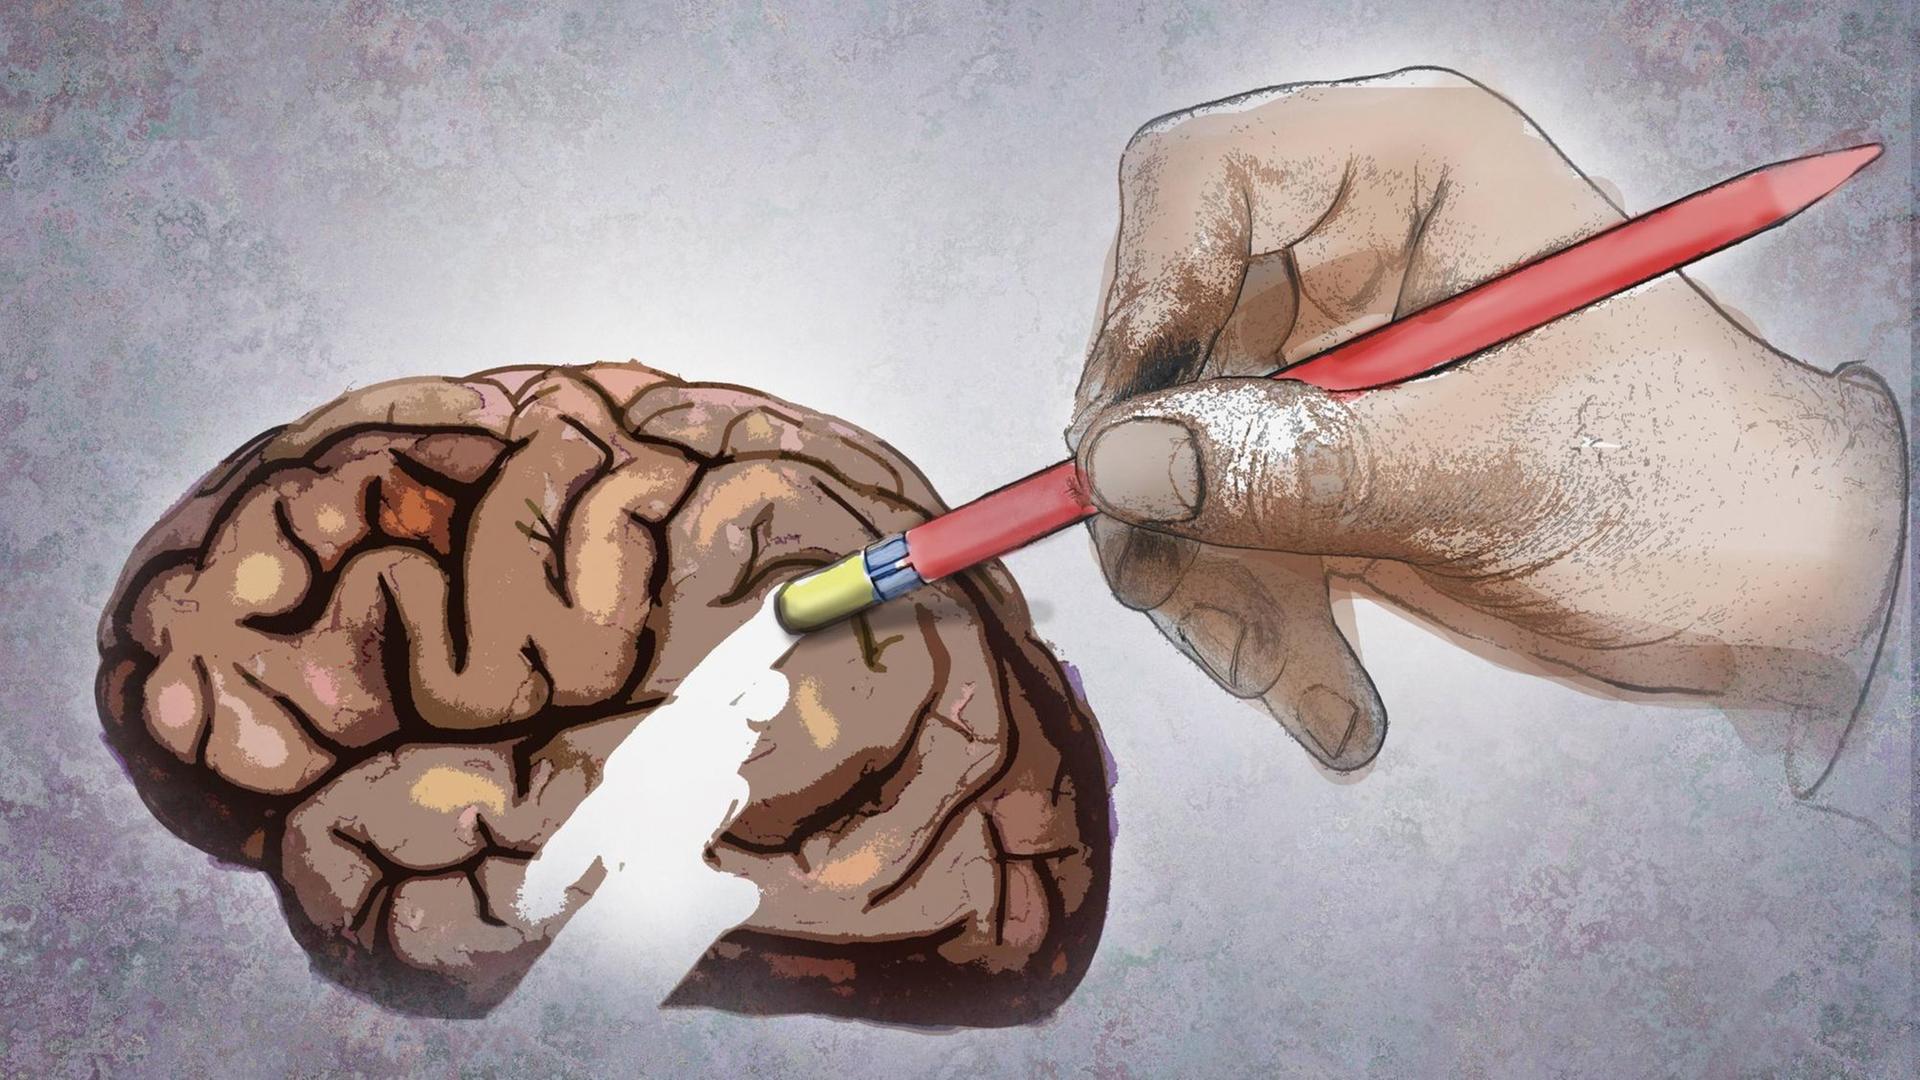 Illustration: eine große Hand löscht einen Teil des Gehirns mit einem Radiergummi am Ende eines Bleistifts.